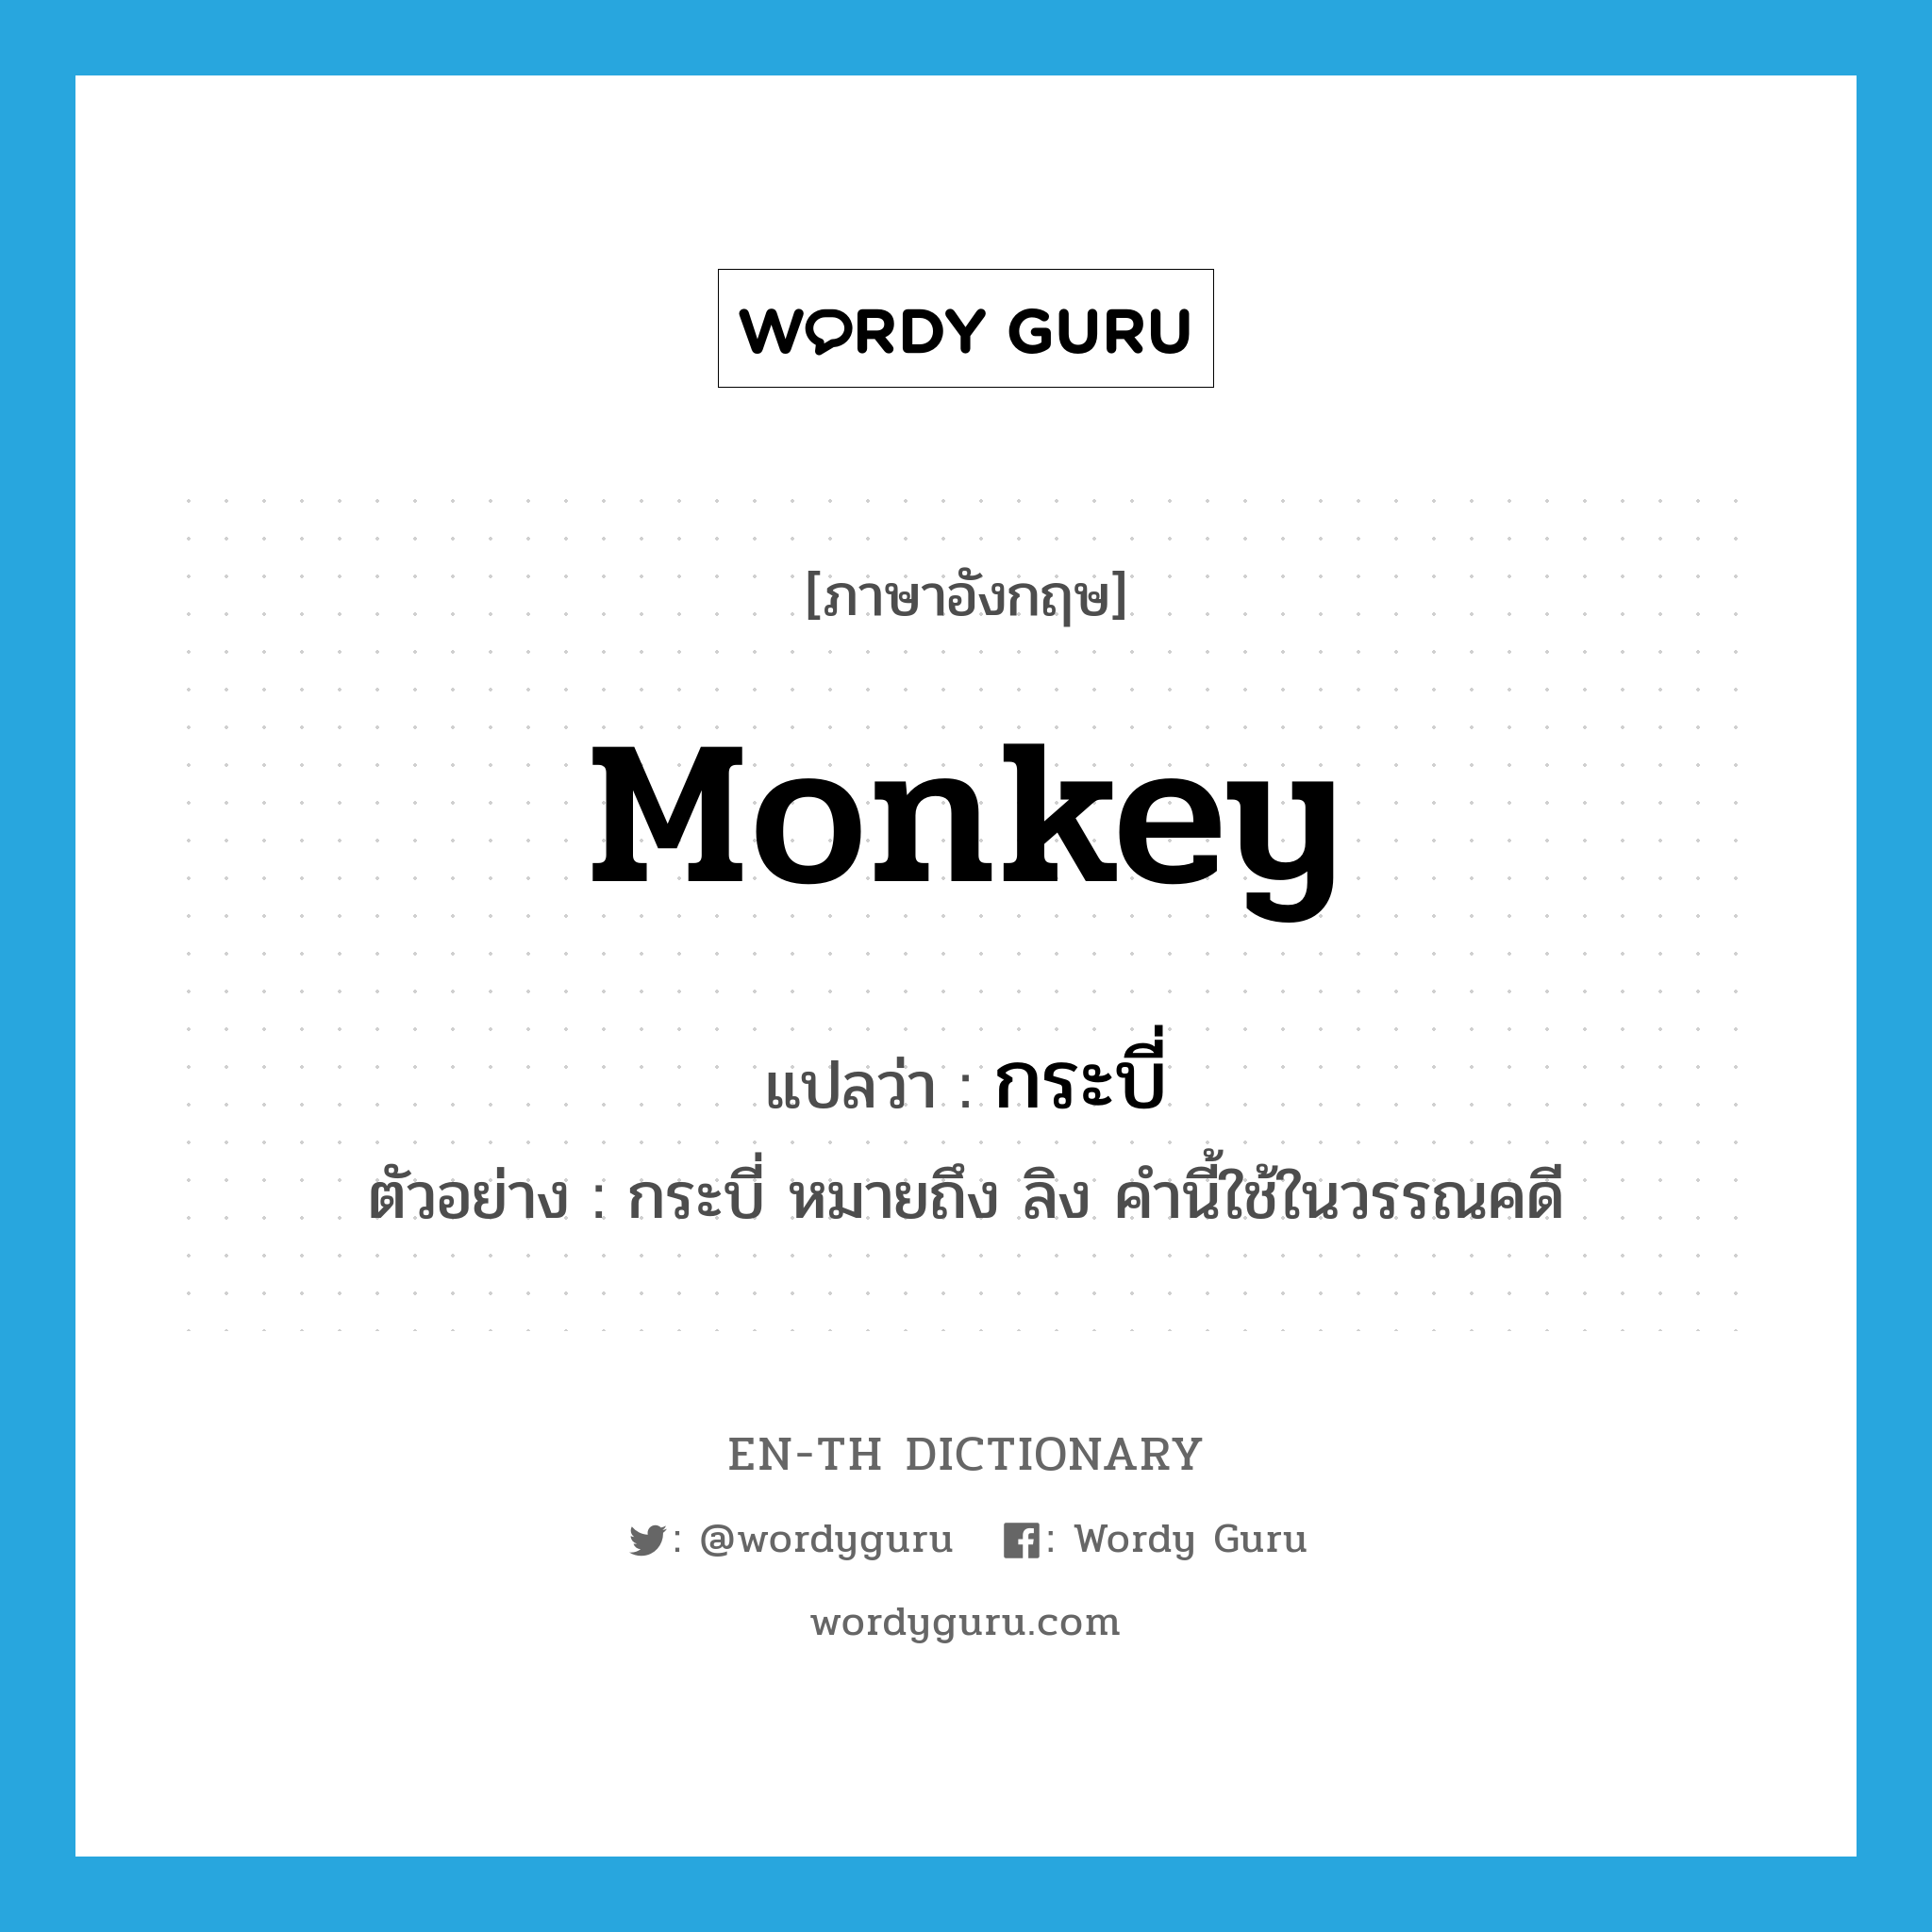 monkey แปลว่า?, คำศัพท์ภาษาอังกฤษ monkey แปลว่า กระบี่ ประเภท N ตัวอย่าง กระบี่ หมายถึง ลิง คำนี้ใช้ในวรรณคดี หมวด N